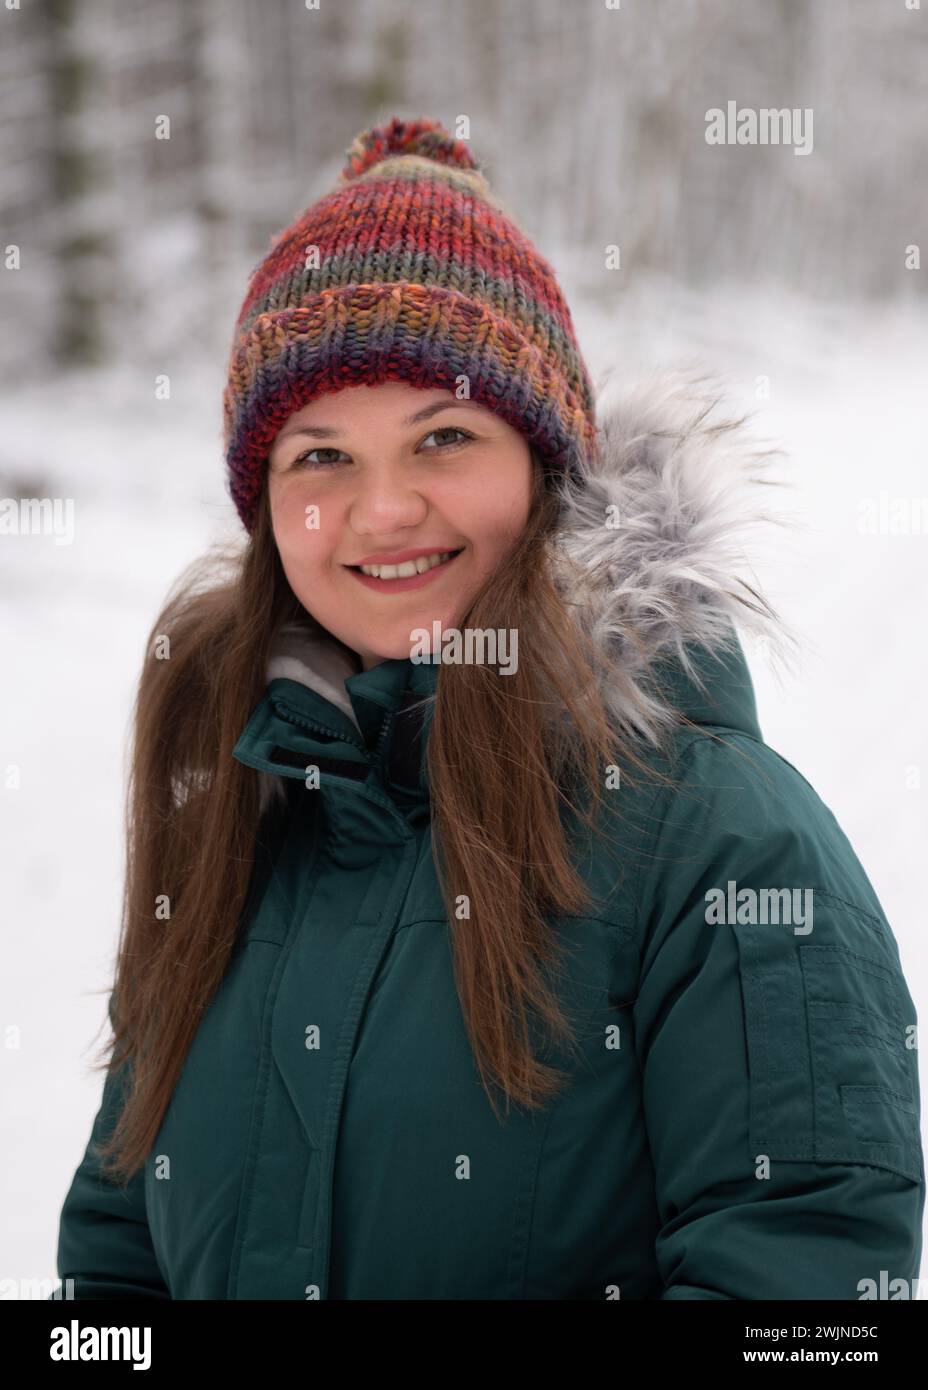 une femme au visage amical vêtue d'un chapeau d'hiver vibrant et d'une veste sarcelle, sur la toile de fond sereine d'un bois enneigé. Son sourire chaleureux contraste avec t Banque D'Images